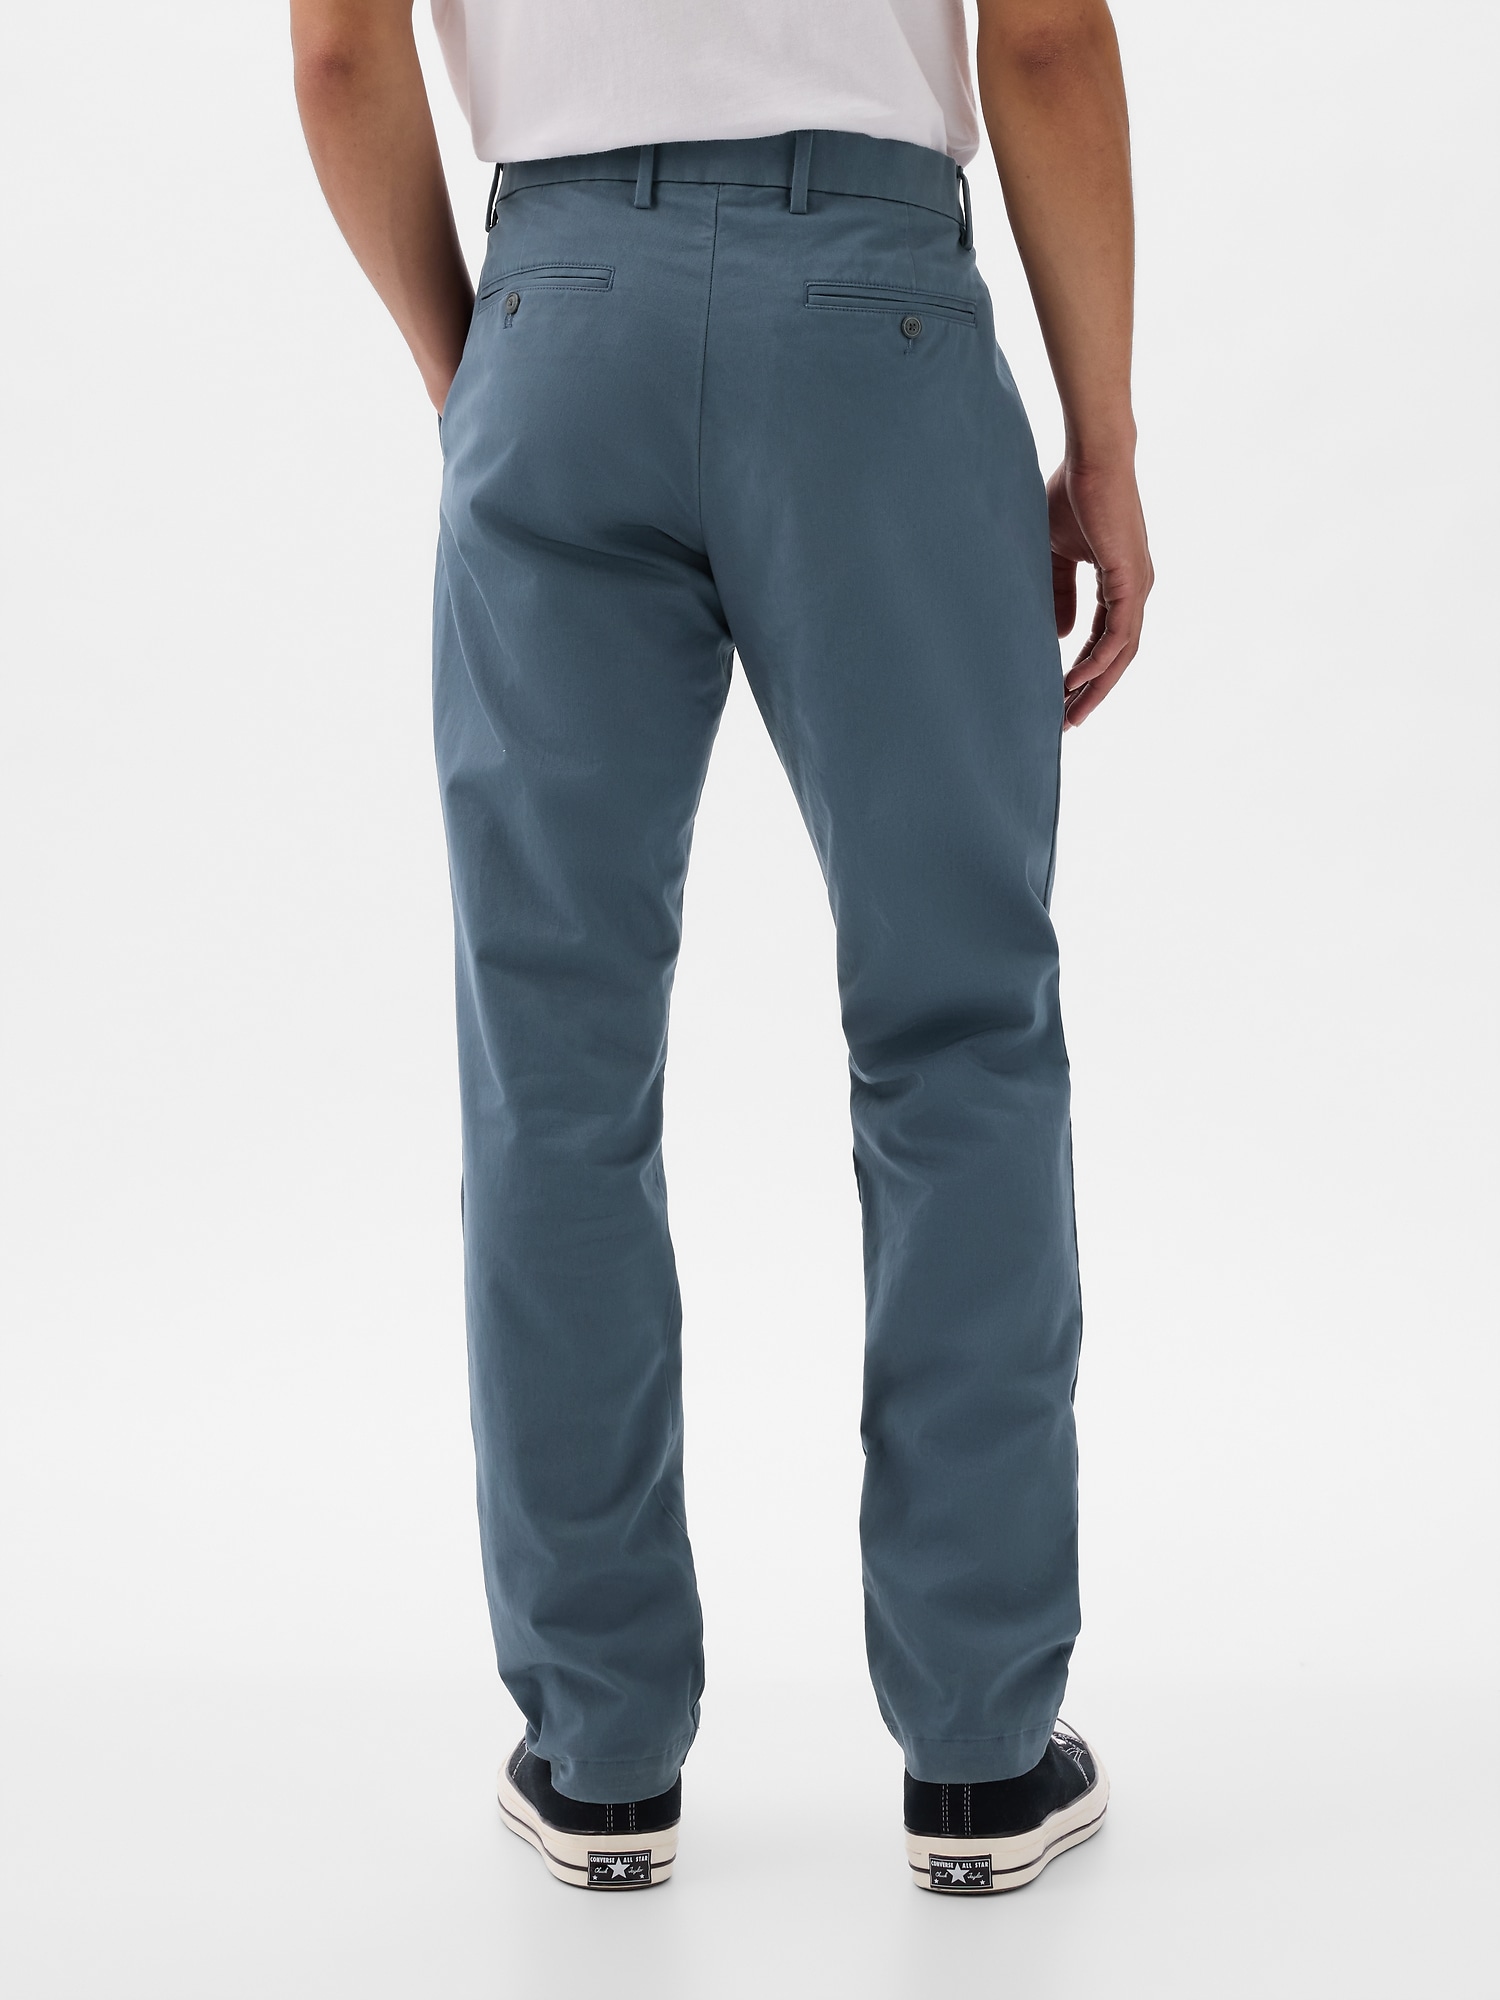 Gap Men's Blue Pants | ShopStyle